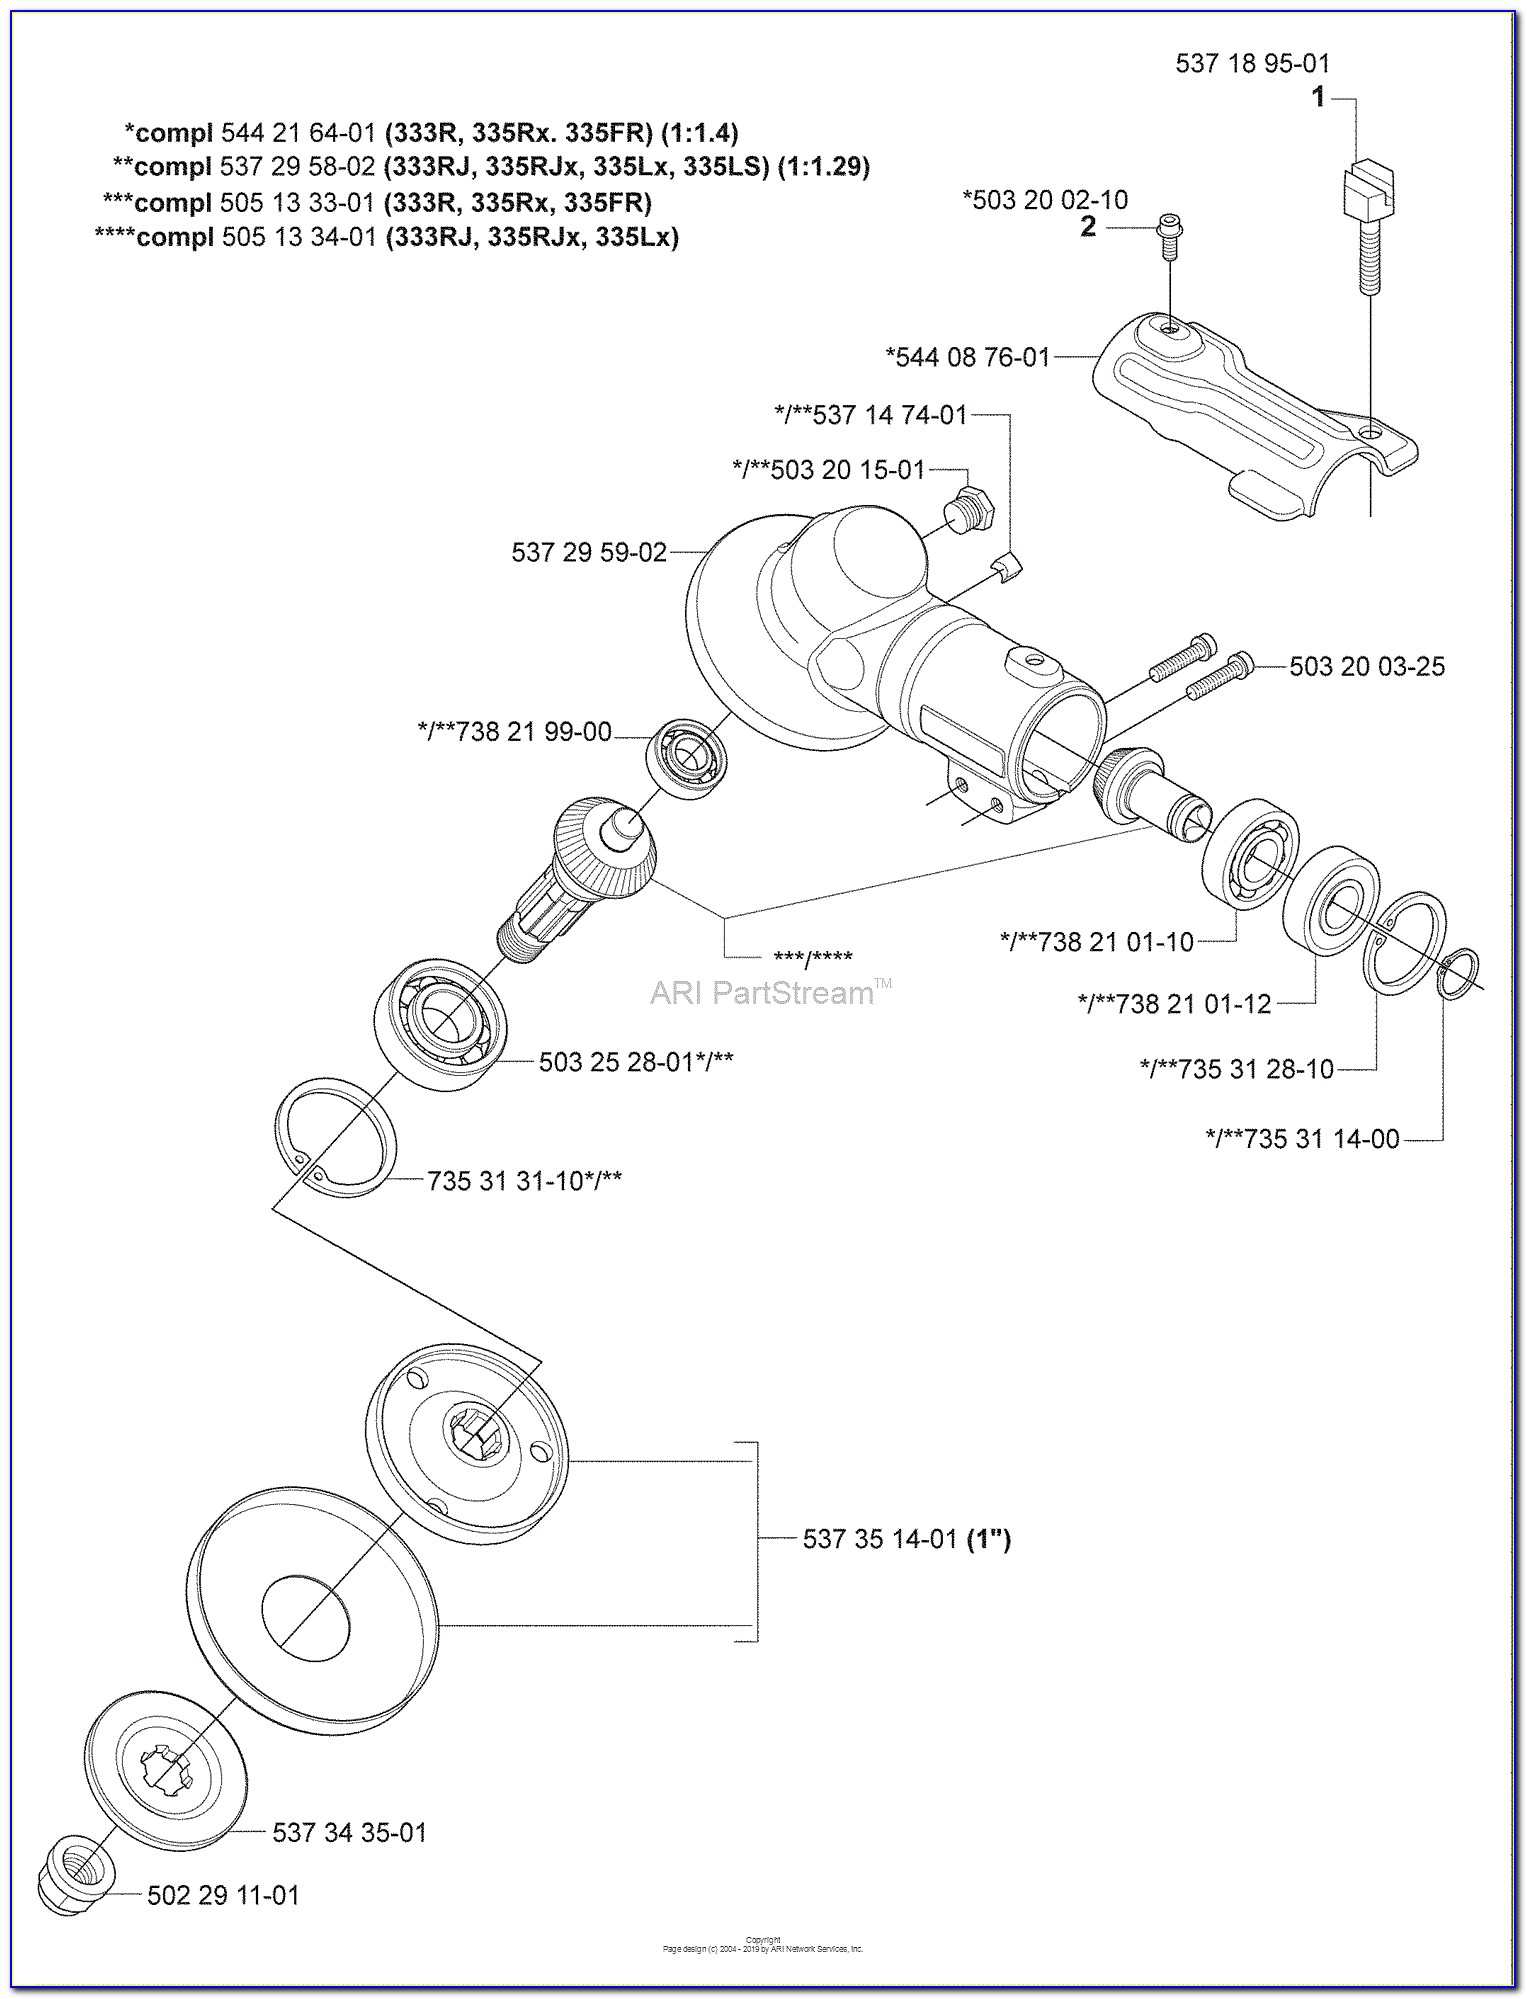 Husqvarna 128ld Carburetor Fuel Line Diagram